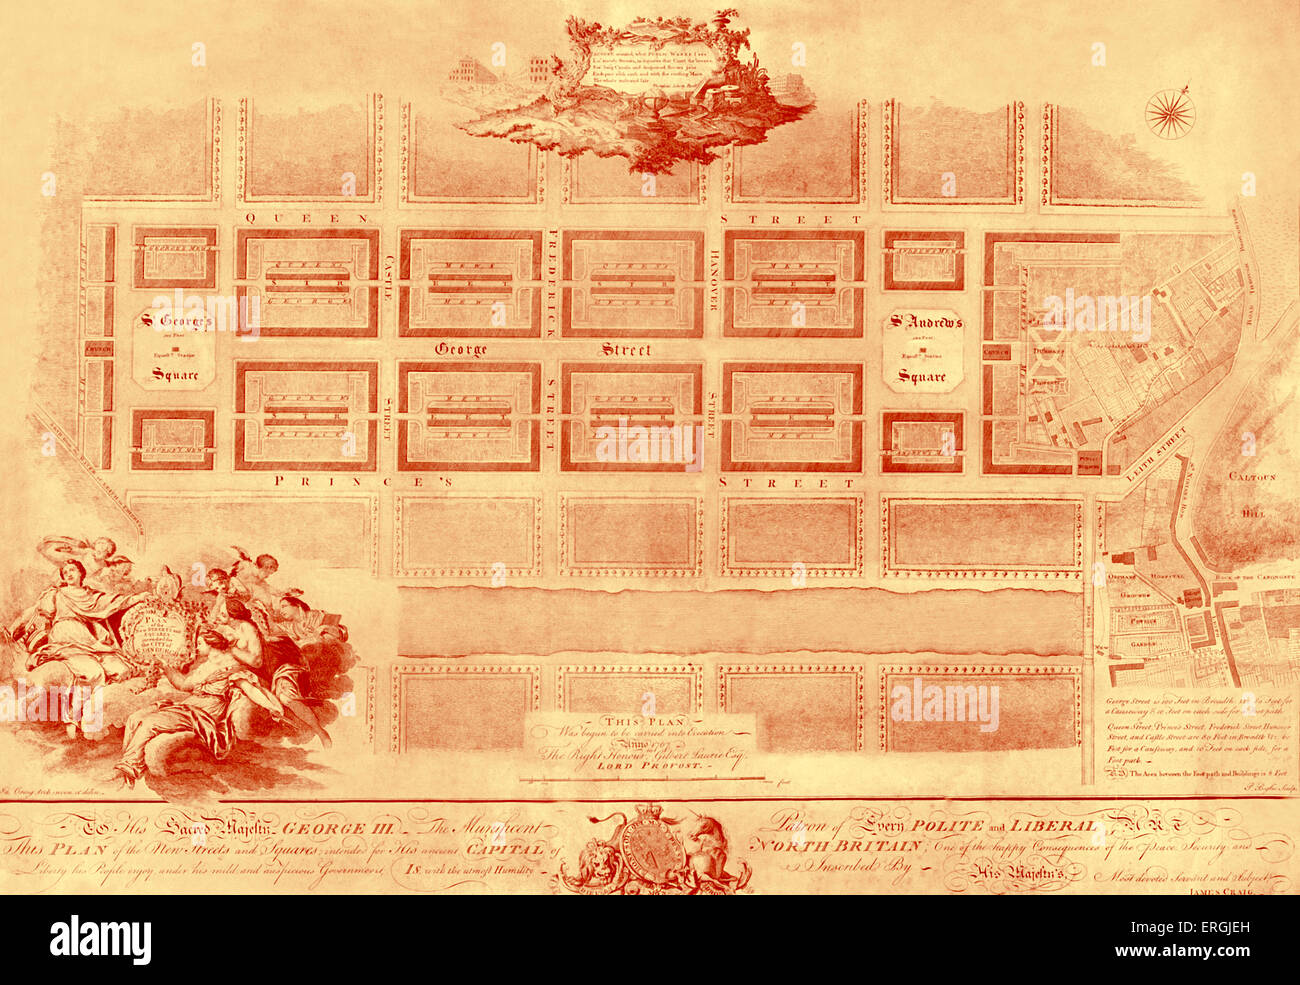 Nuevo plan de la ciudad de Edimburgo, en 1767. Llevada a cabo por Lord Provost Gilbert Laurie, Esq. Lee:' su sagrada Majestad Jorge III El Foto de stock